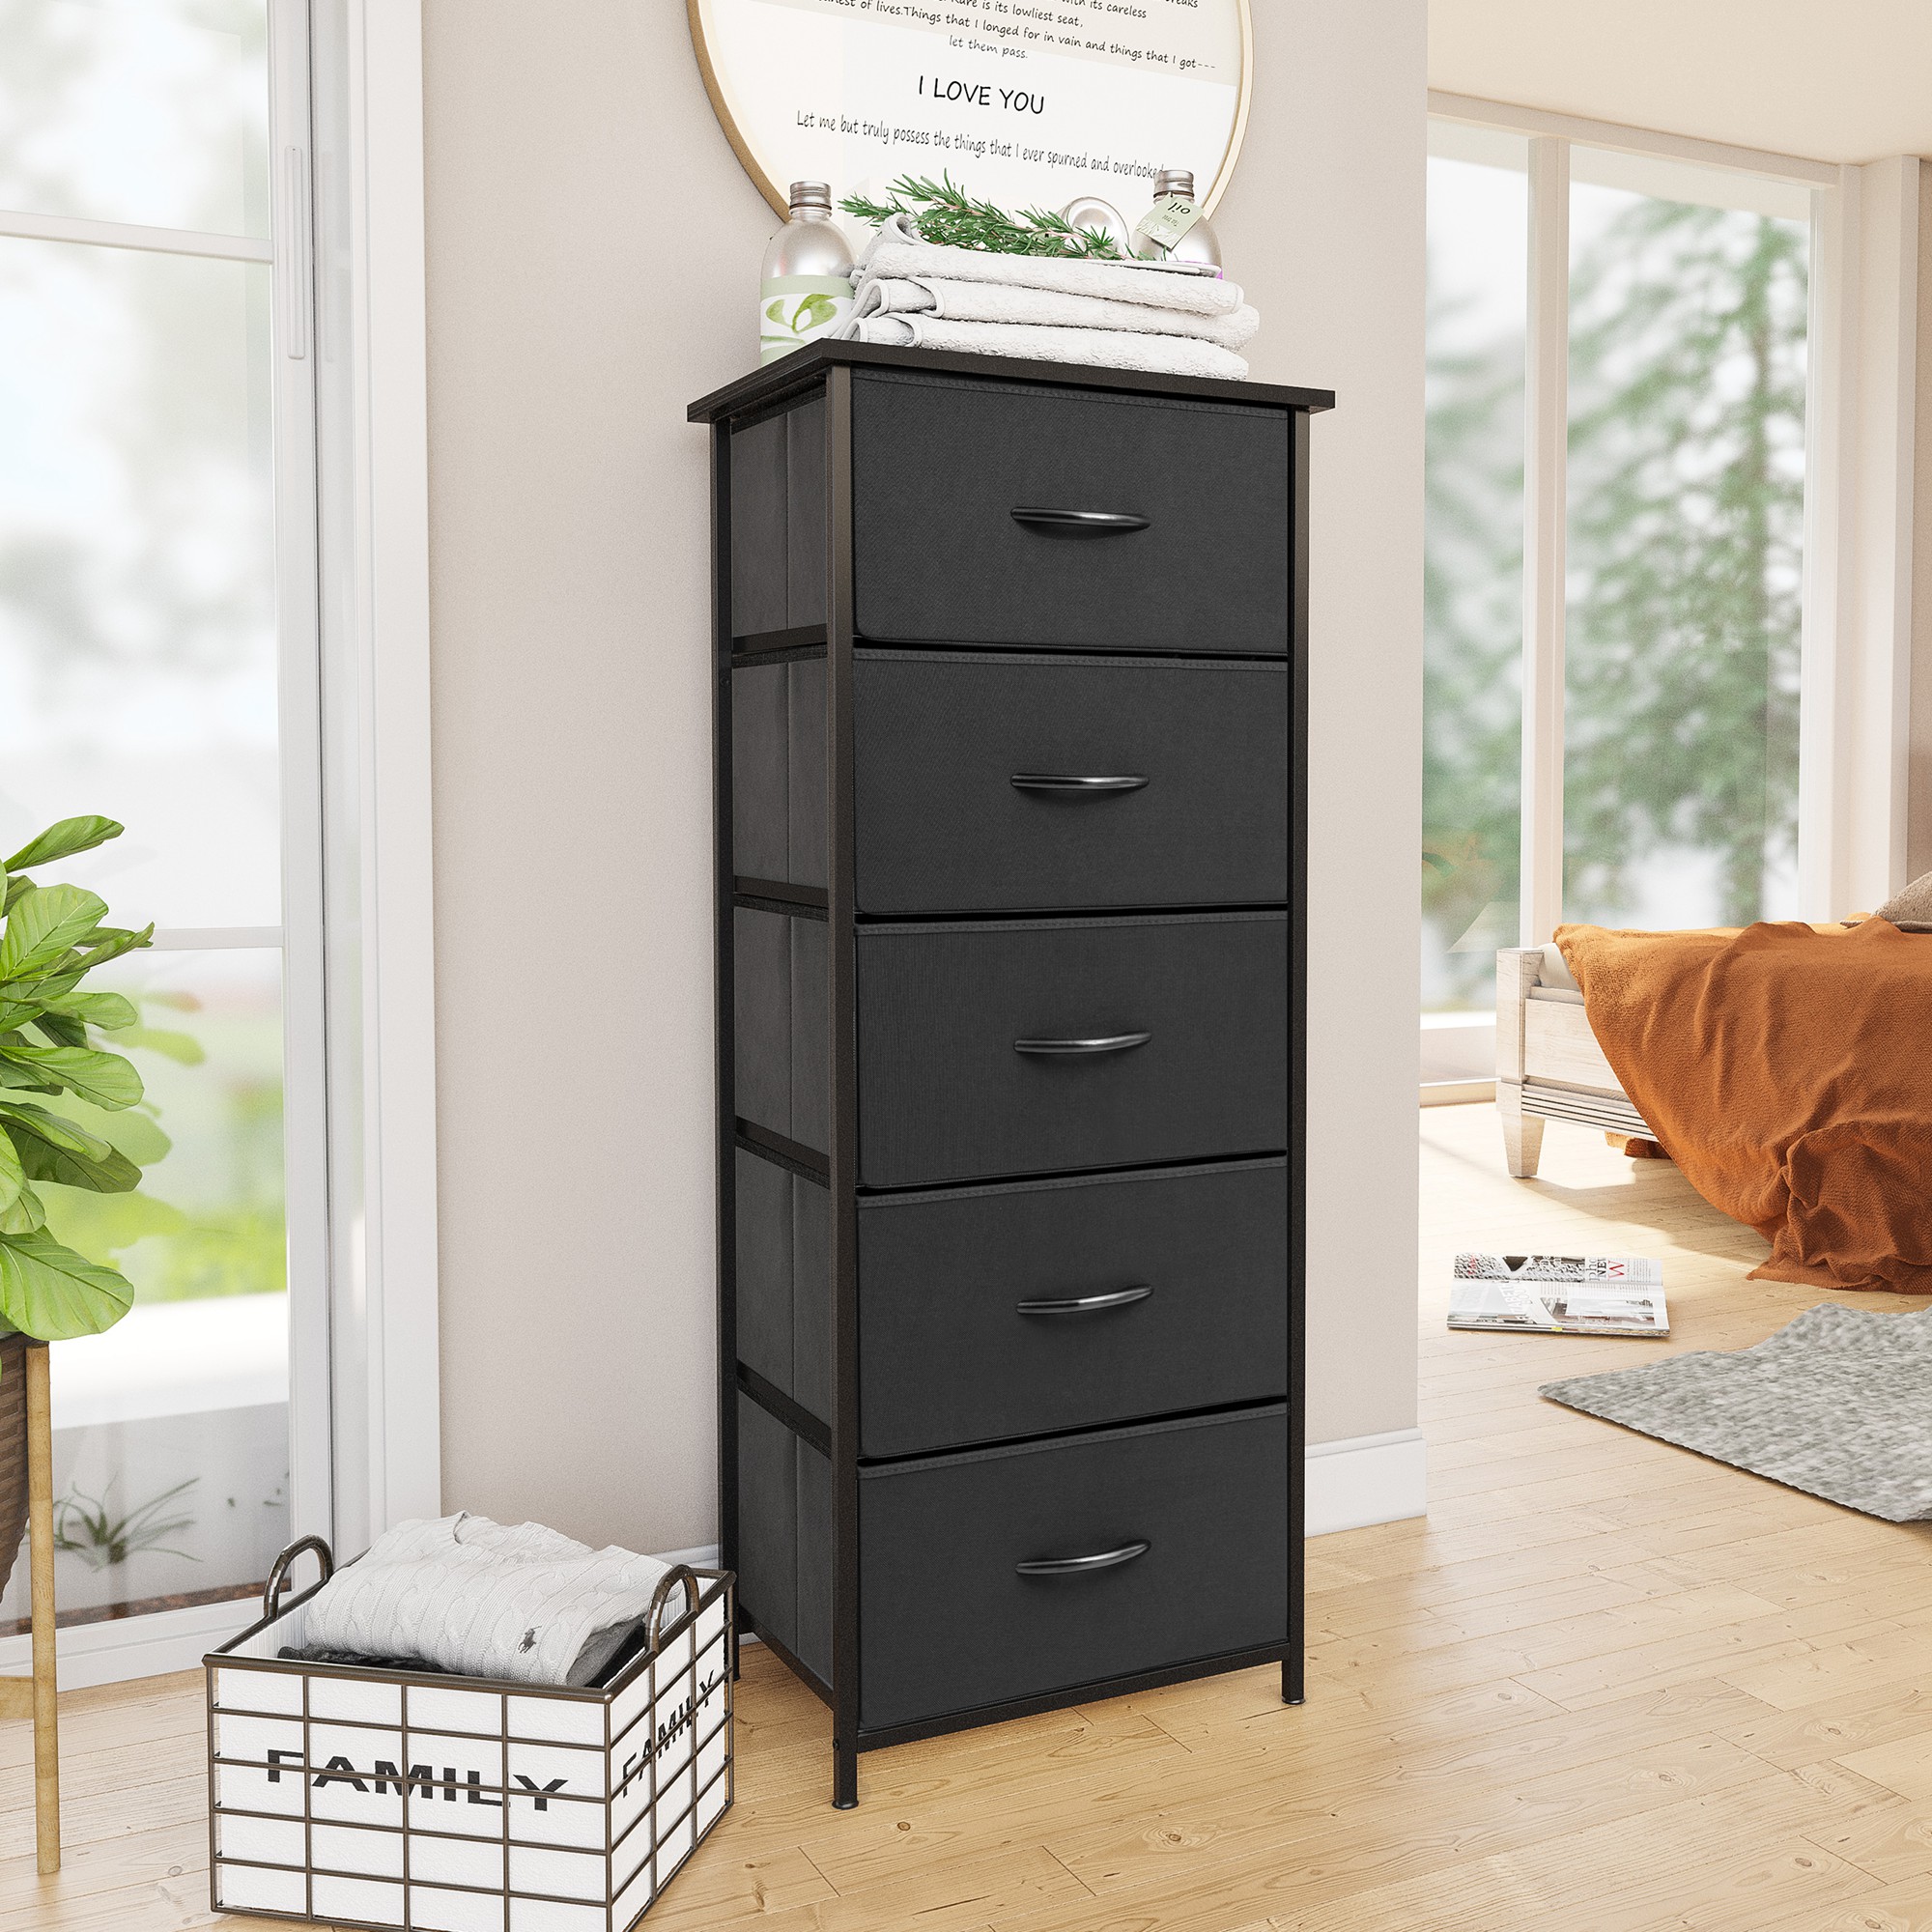 Pellebant Black 5-Drawer Dresser Household Vertical Storage Tower Chest - image 1 of 8